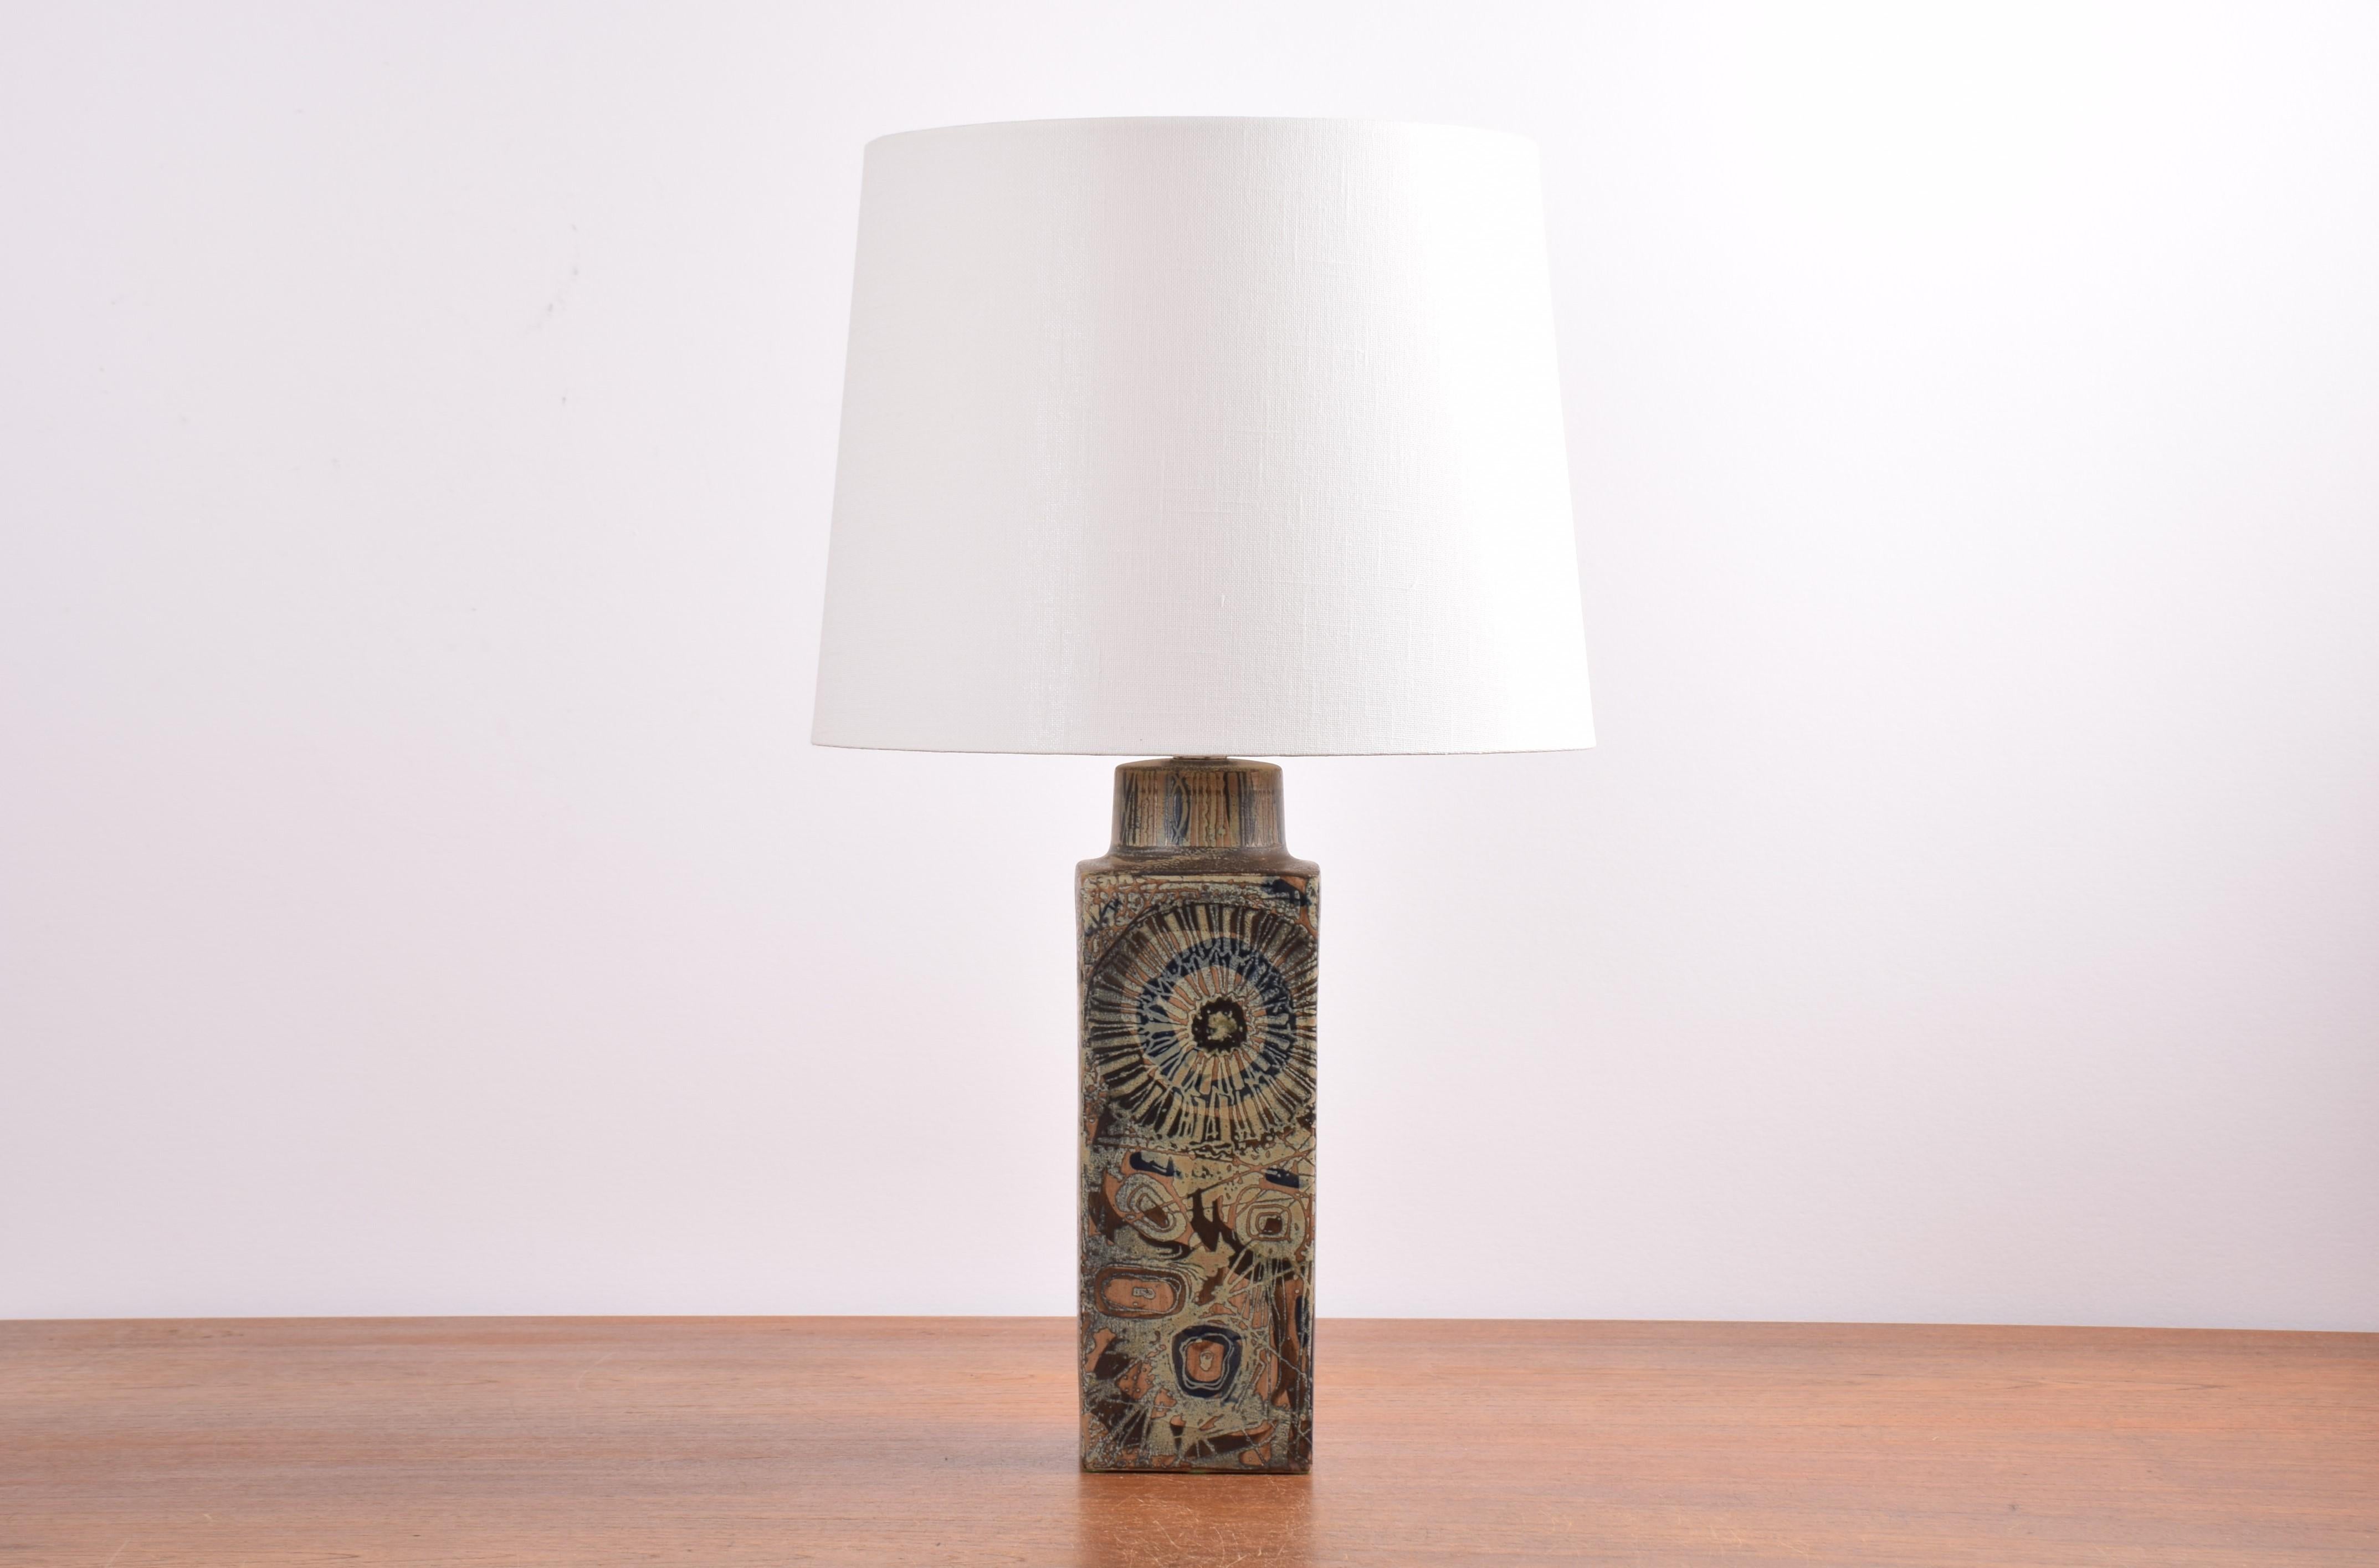 Lampe de table en céramique conçue par Nils Thorsson pour Royal Copenhagen et Fog & Mrup et fabriquée vers les années 1970.
Il présente un décor floral abstrait en glaçure brune et bleue mate. Le suraface est tactile.

Un nouvel abat-jour conçu